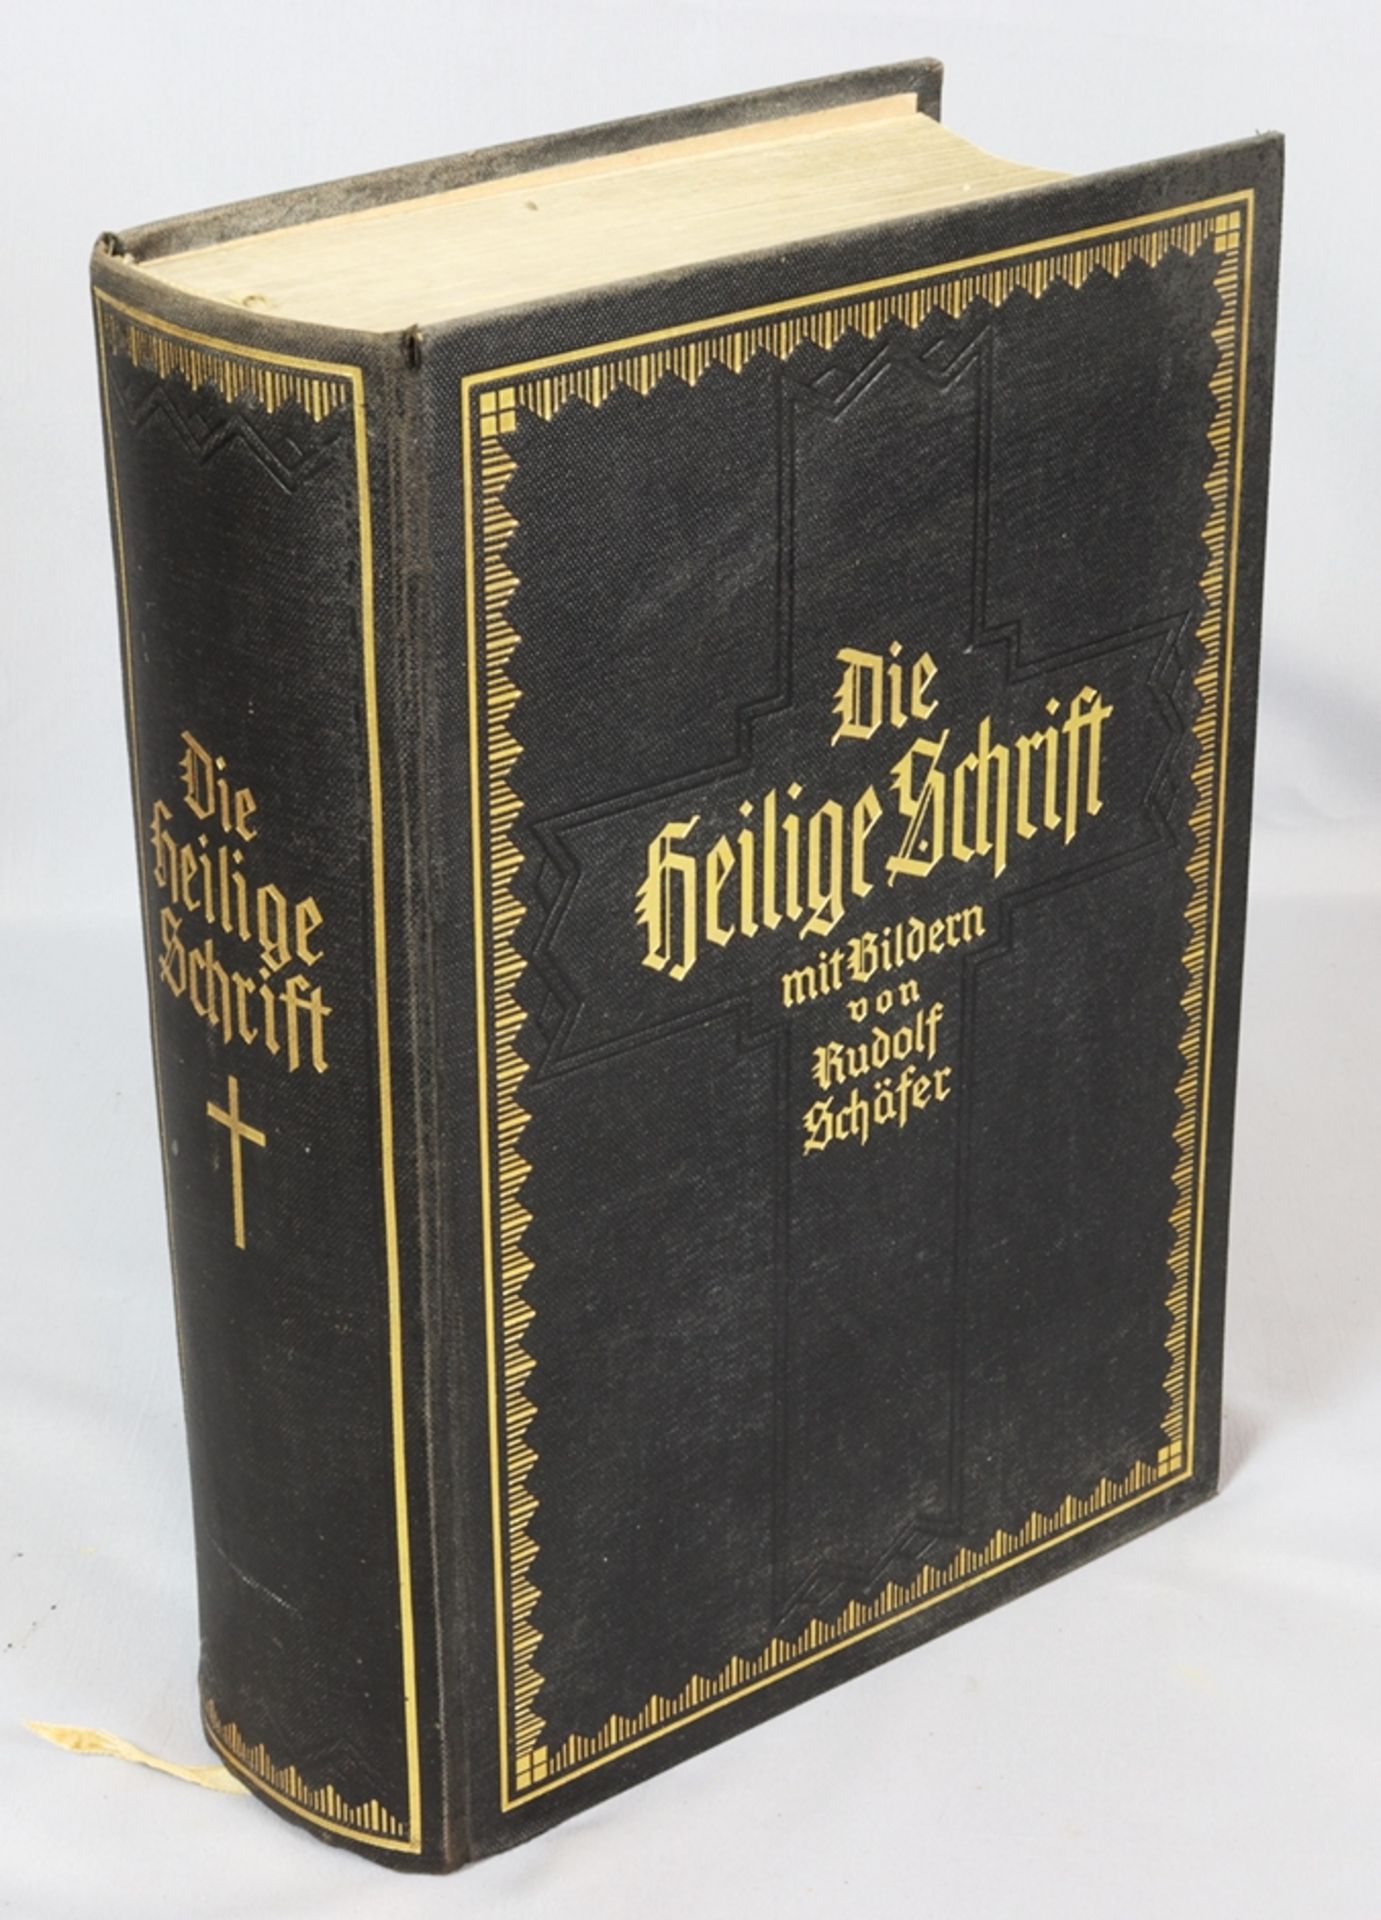 Die Bibel, ganze Heilige Schrift mit Bildern von Rudolf Schäfer Stuttgart 1929